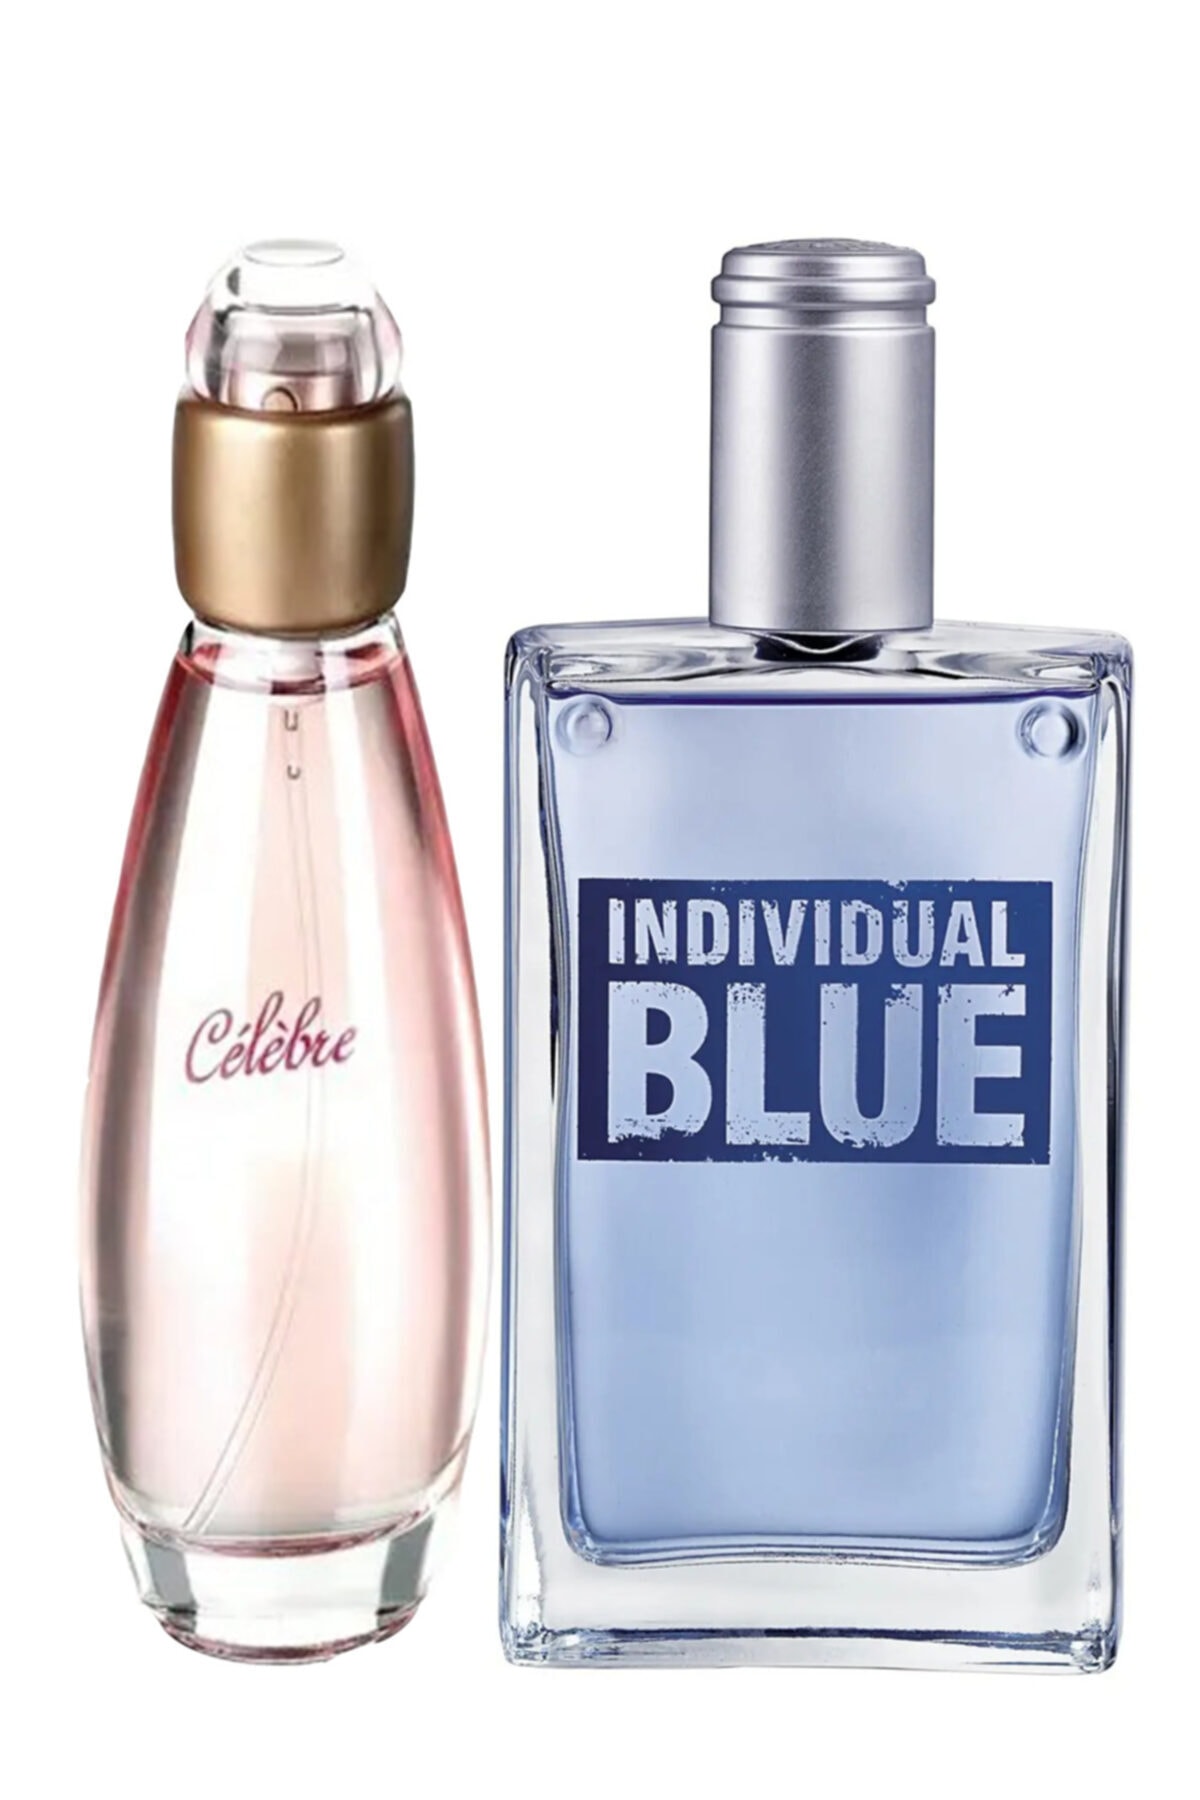 AVON Celebre Edt 50 ml Kadın Parfümü ve Individual Blue Edt 100 ml Erkek Parfümü